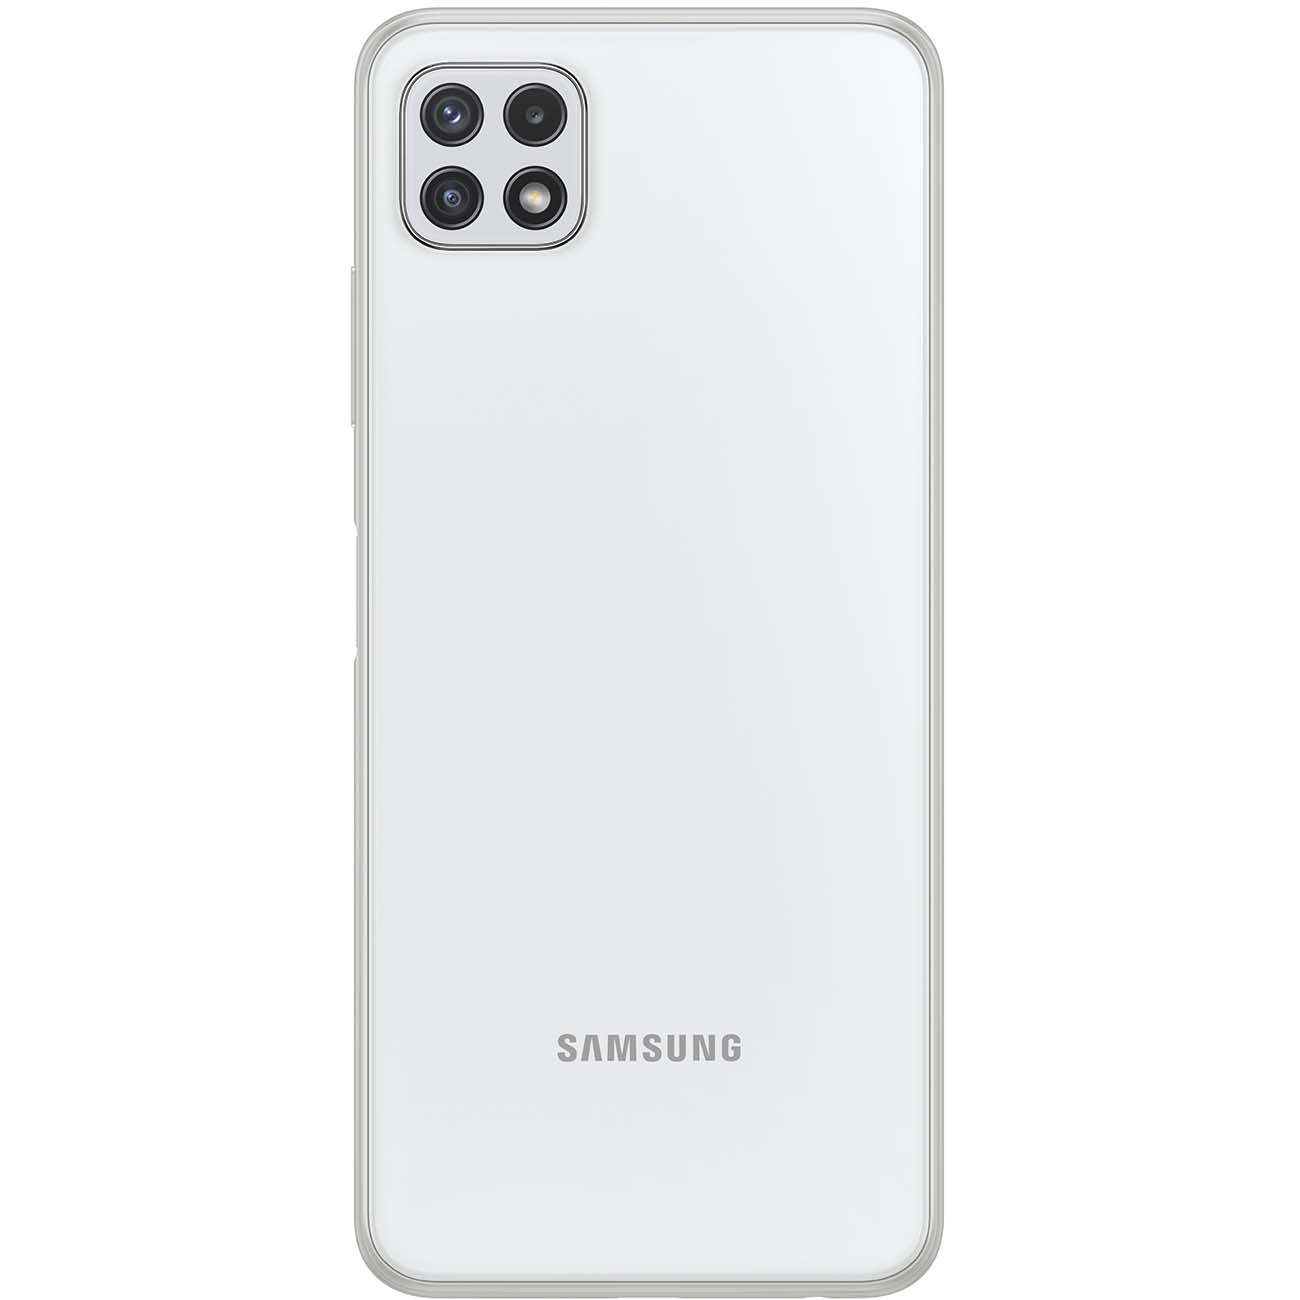 Купить смартфон samsung galaxy a22s 64gb white (sm-a226b) A-Серия в официальном магазине Apple, Samsung, Xiaomi. iPixel.ru Купить, заказ, кредит, рассрочка, отзывы,  характеристики, цена,  фотографии, в подарок.